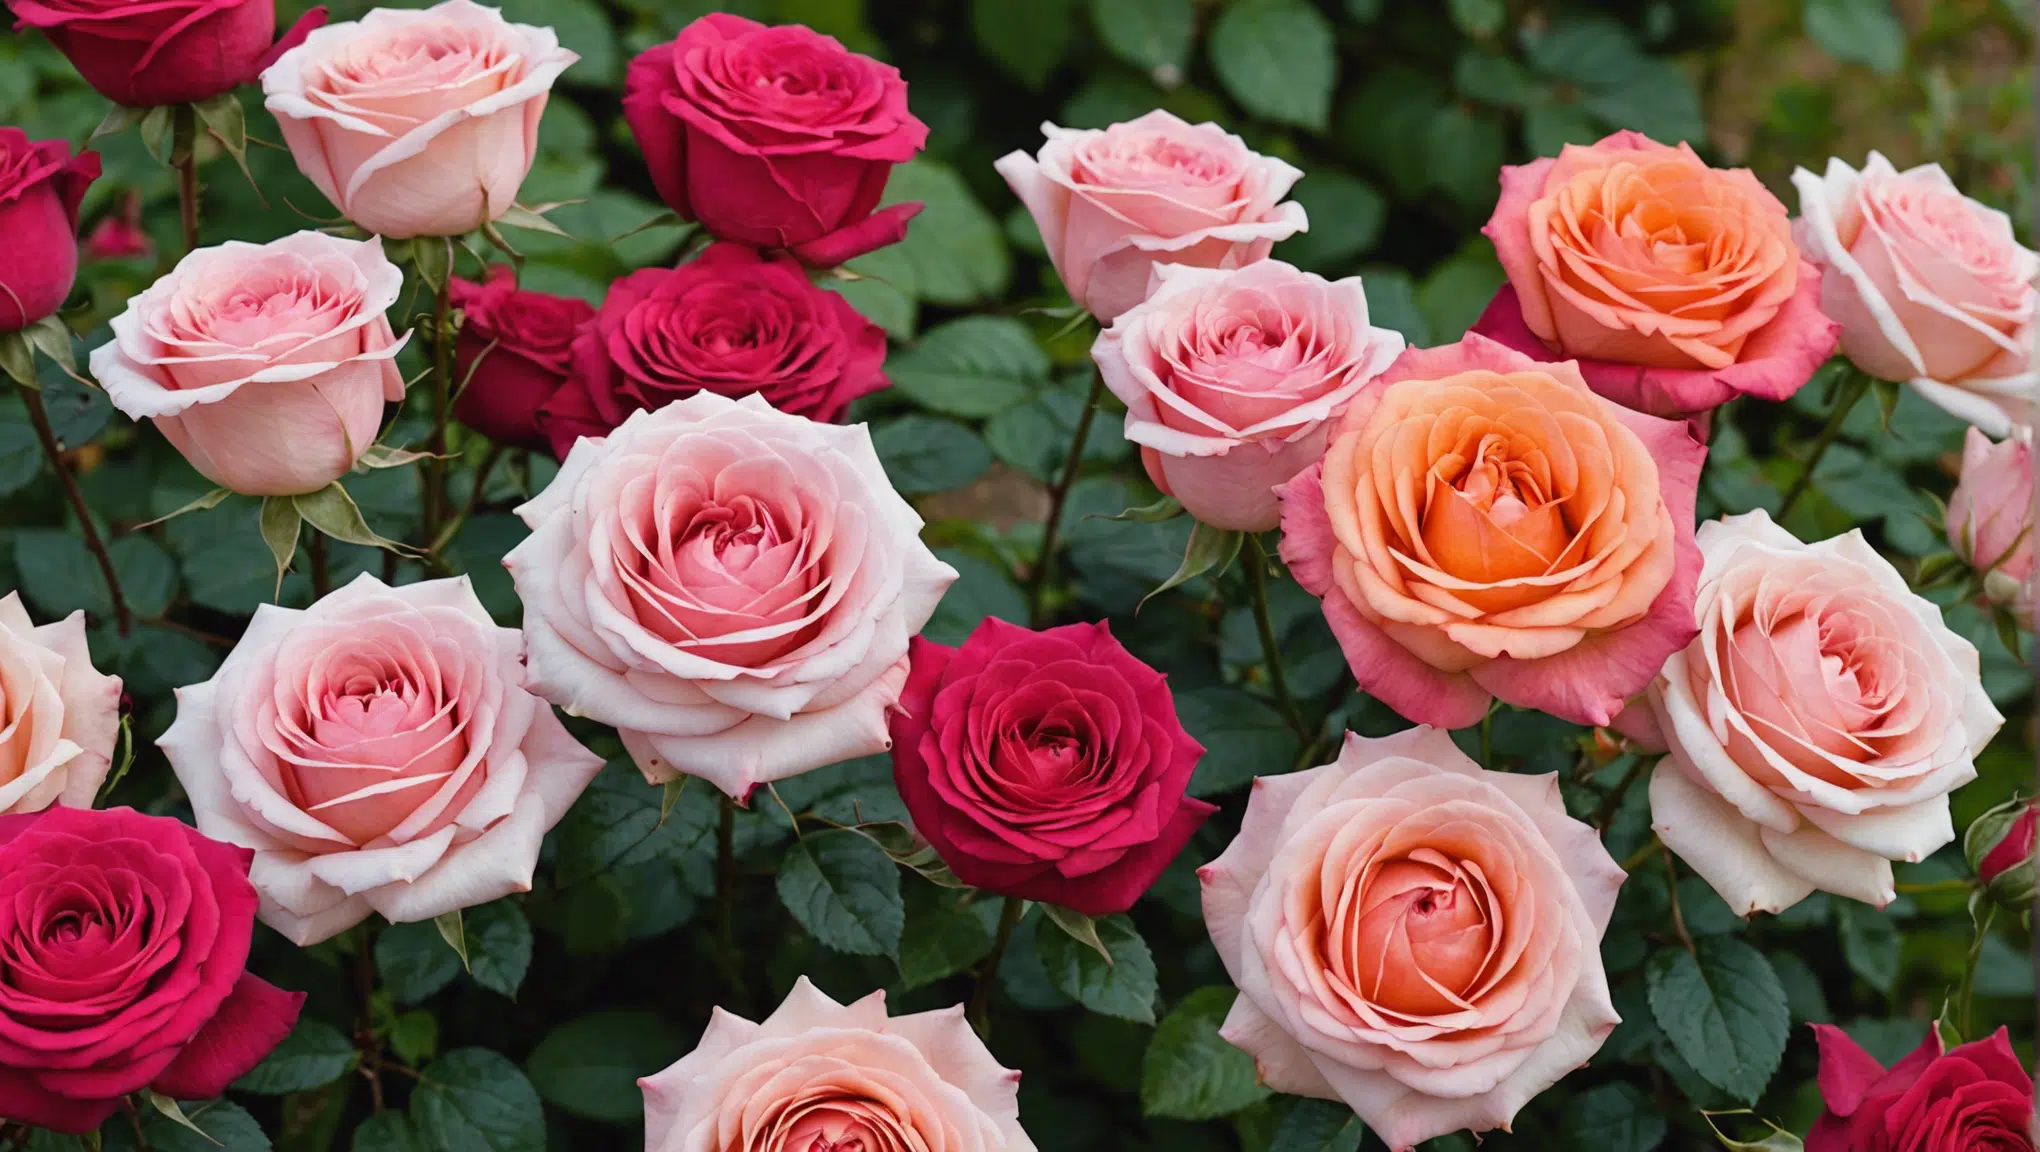 découvrez comment choisir parmi les différentes variétés de roses pour enrichir votre jardin de couleur et d'élégance. conseils et astuces pour créer un jardin fleuri et harmonieux.